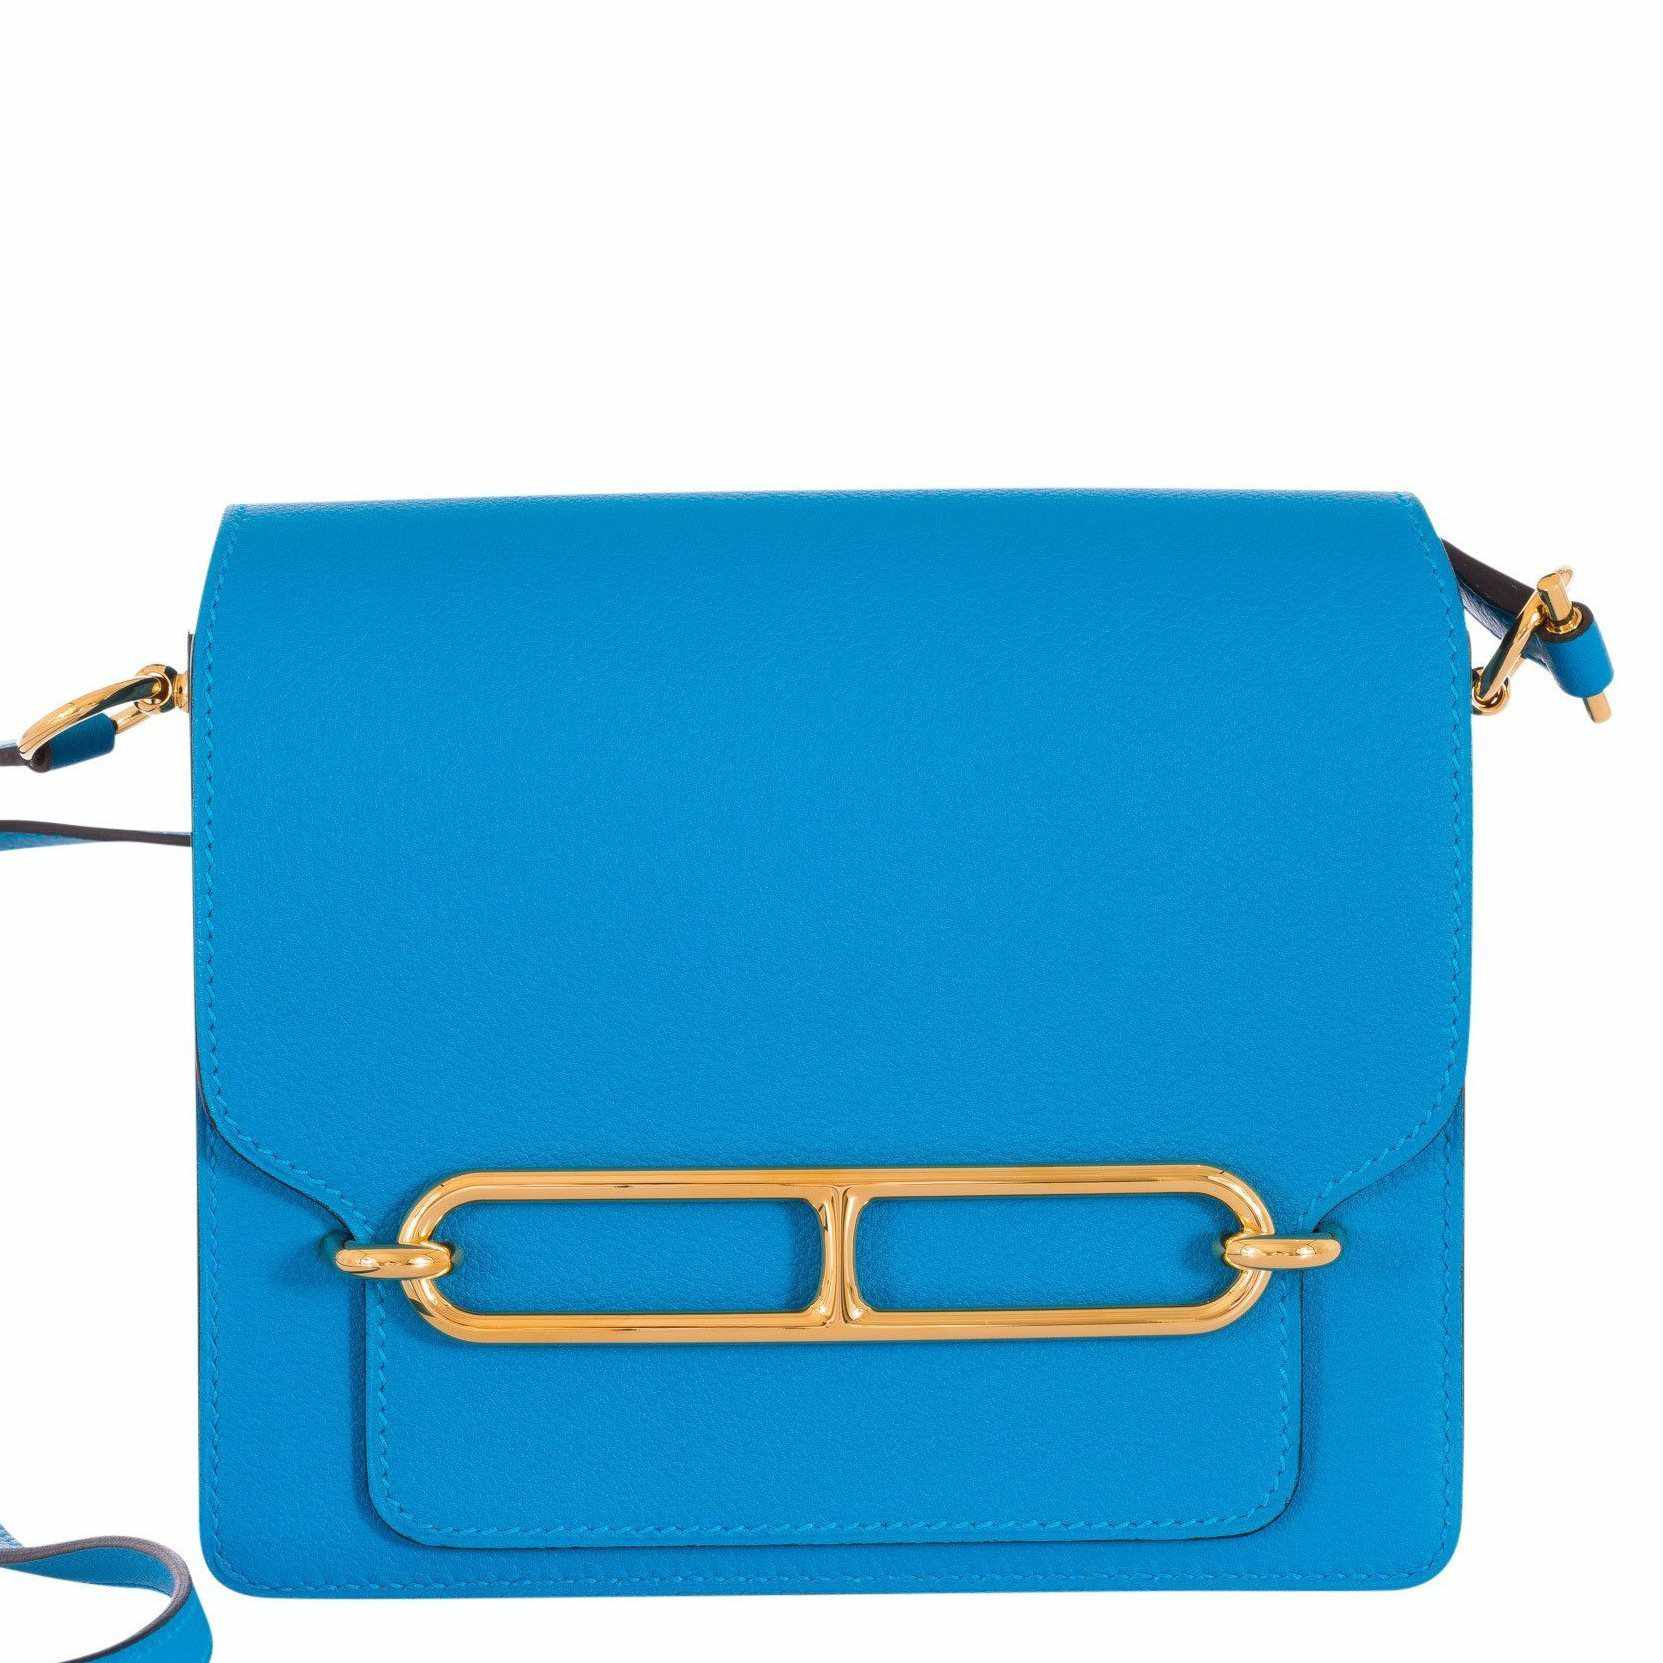 Hermes Mini Kelly 20 cm Sellier Bag Navy Blue Box Golden Hardware